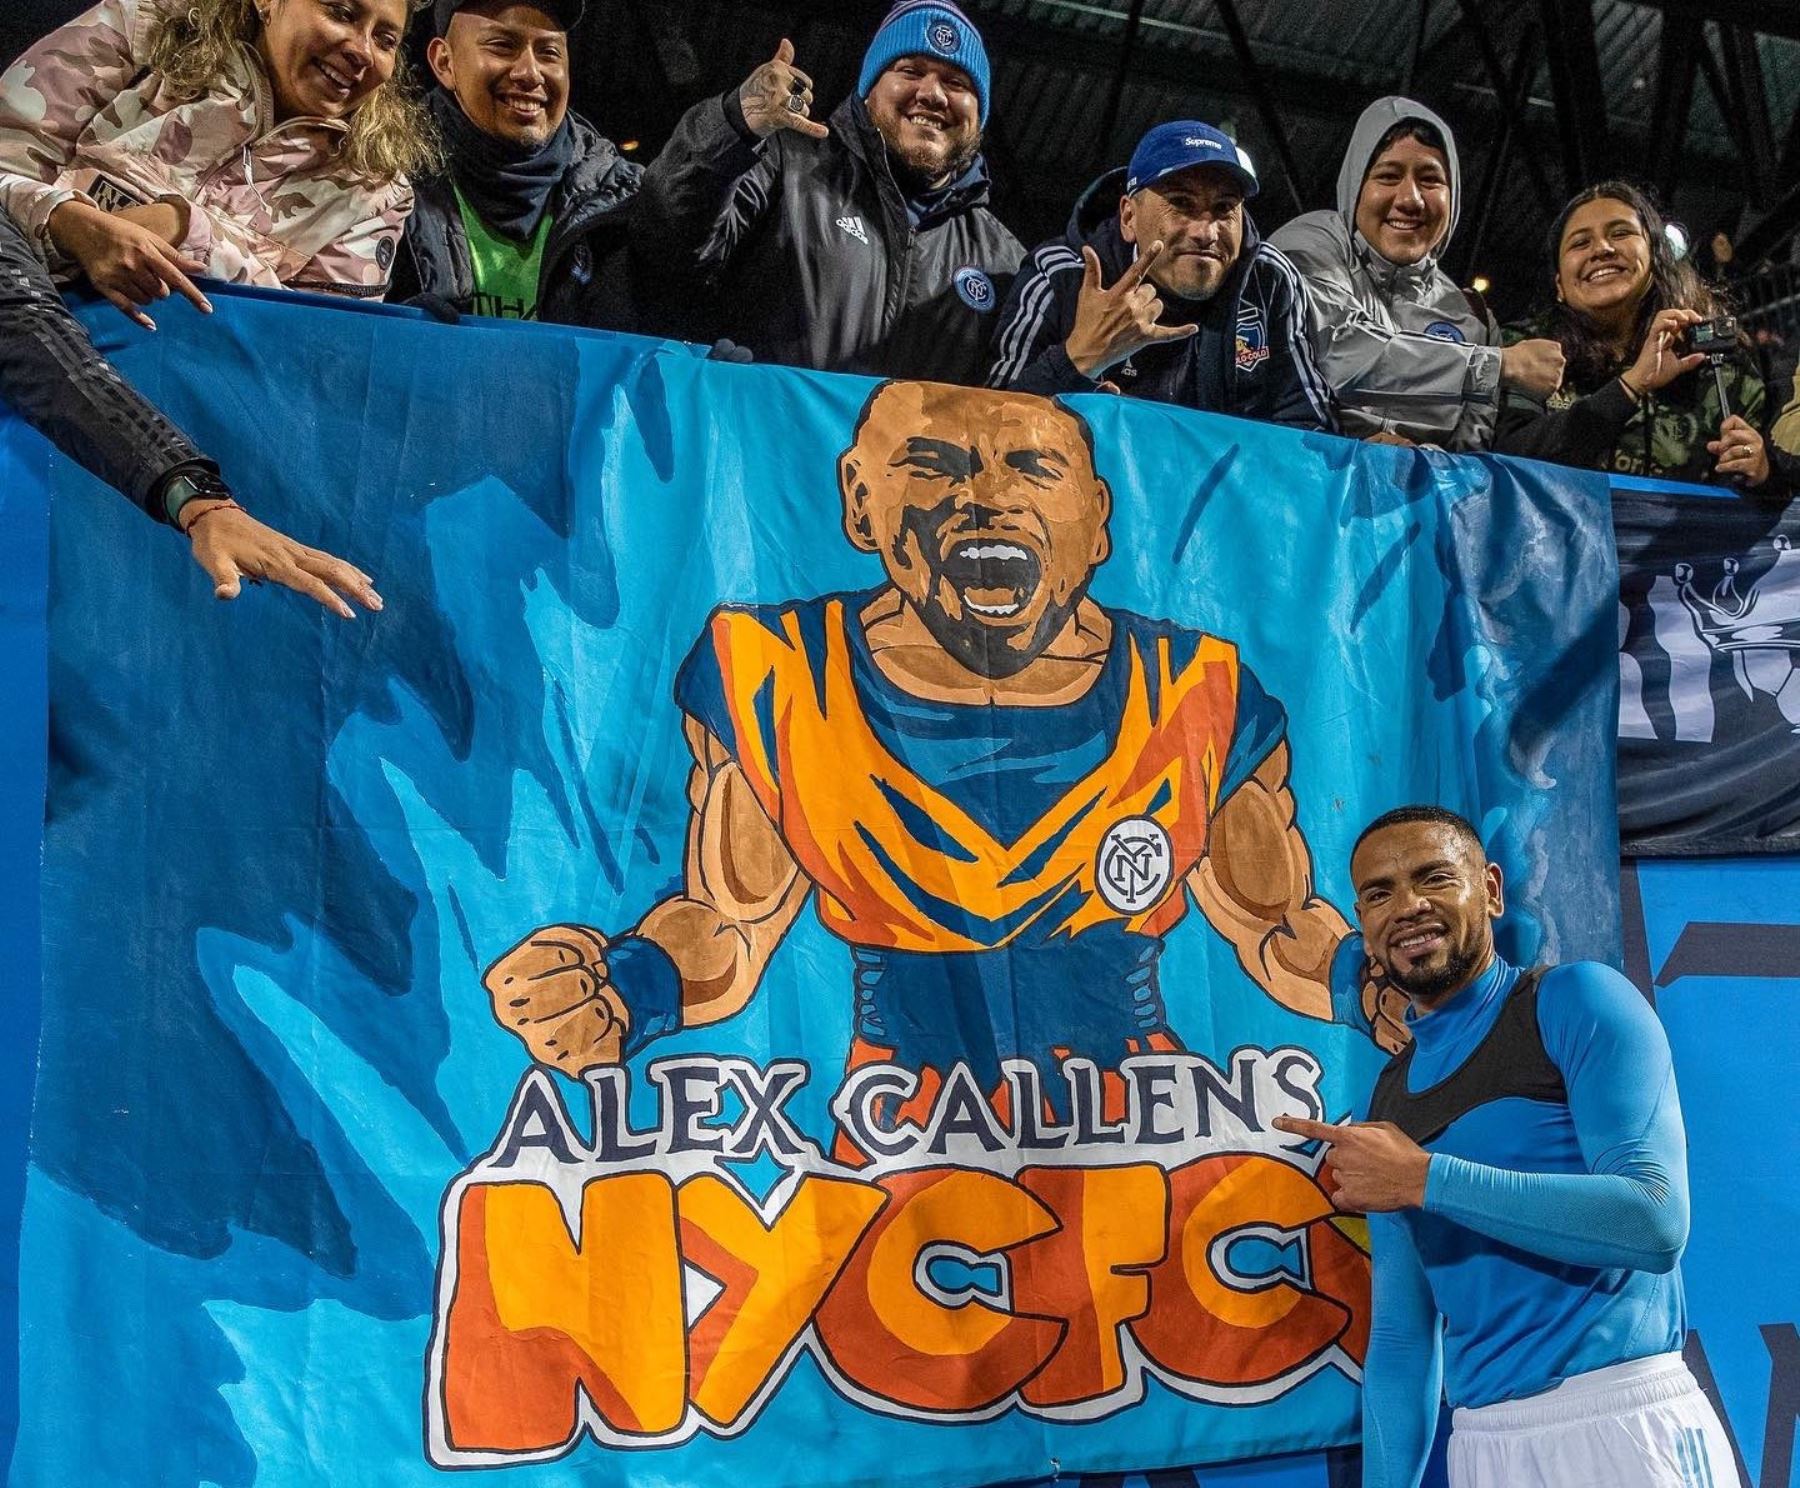 Alexander Callens es idolatrado por los hinchas del New York City de la MLS